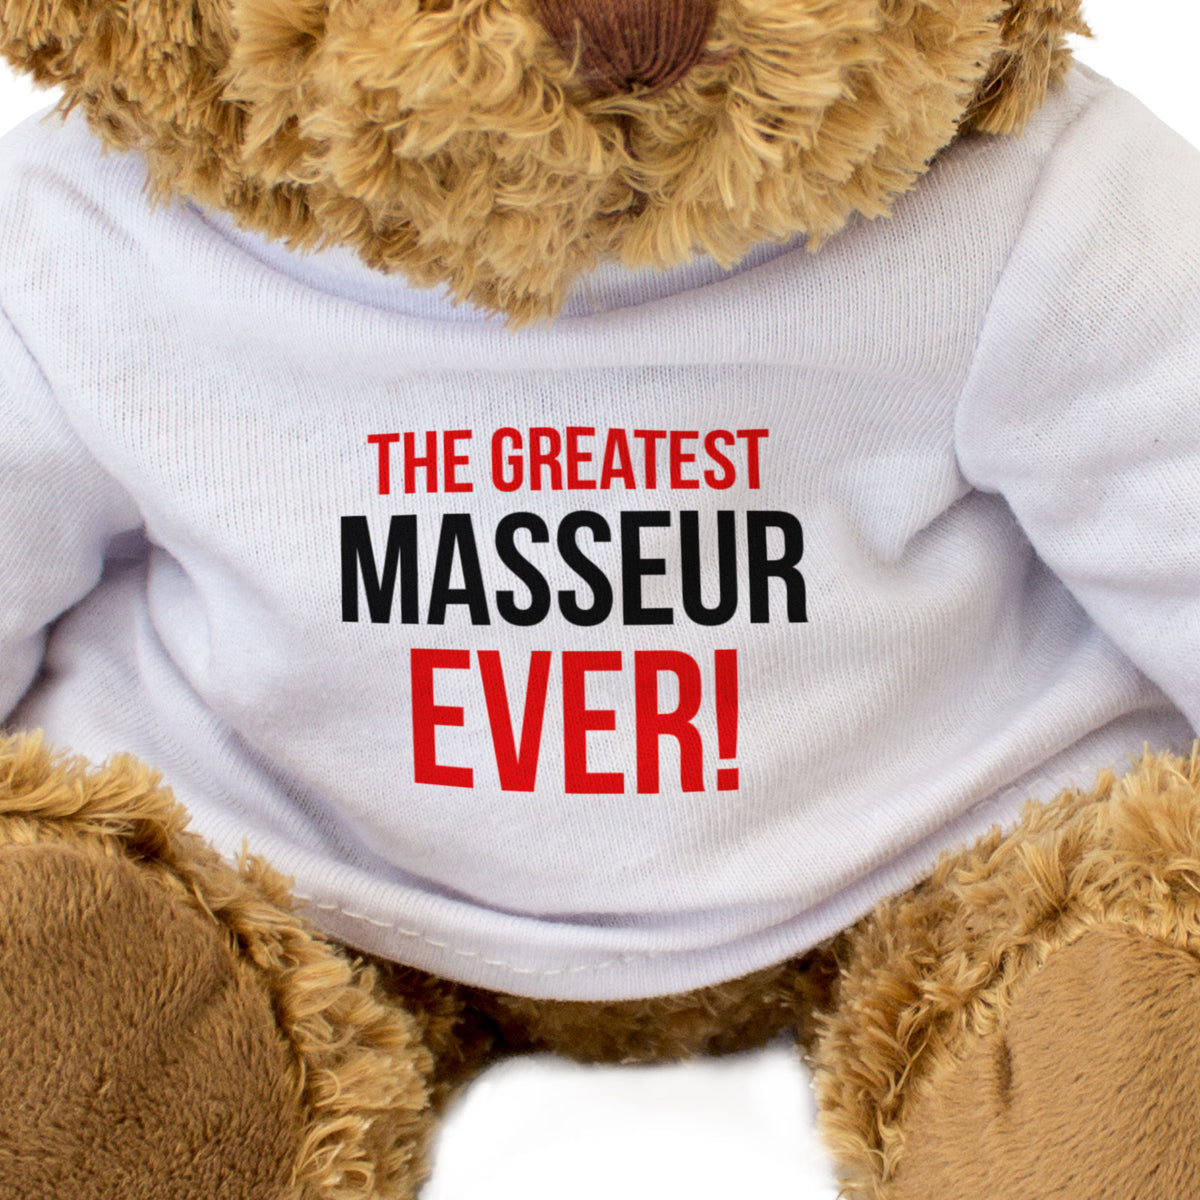 The Greatest Masseur Ever - Teddy Bear